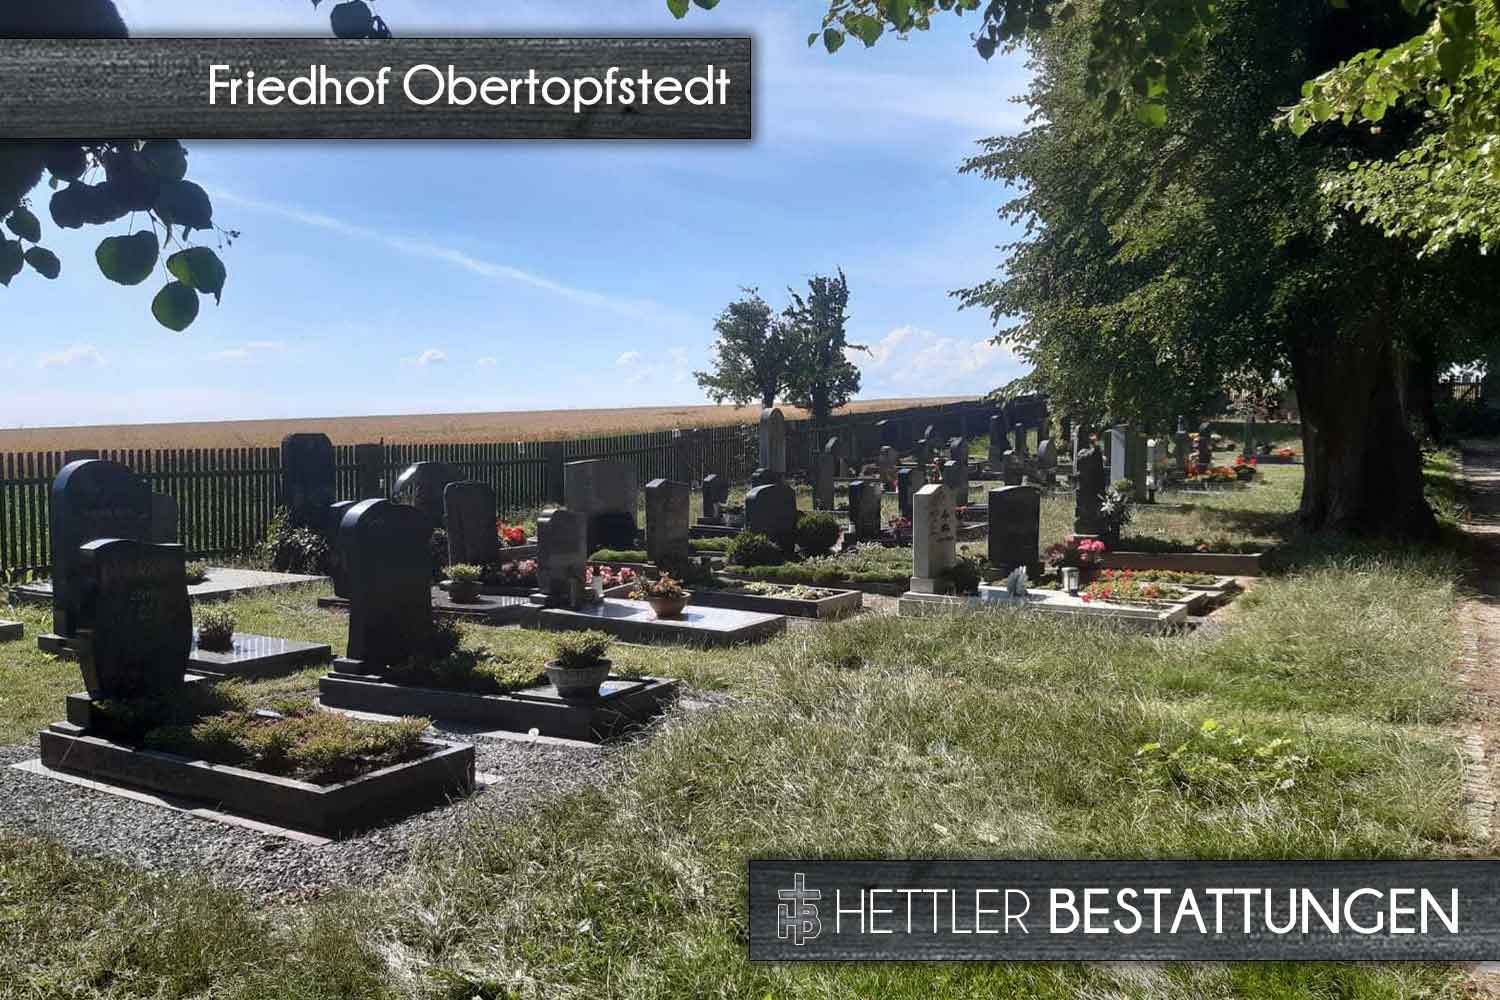 Friedhof in Obertopfstedt. Ihr Ort des Abschieds mit Hettler Bestattungen.